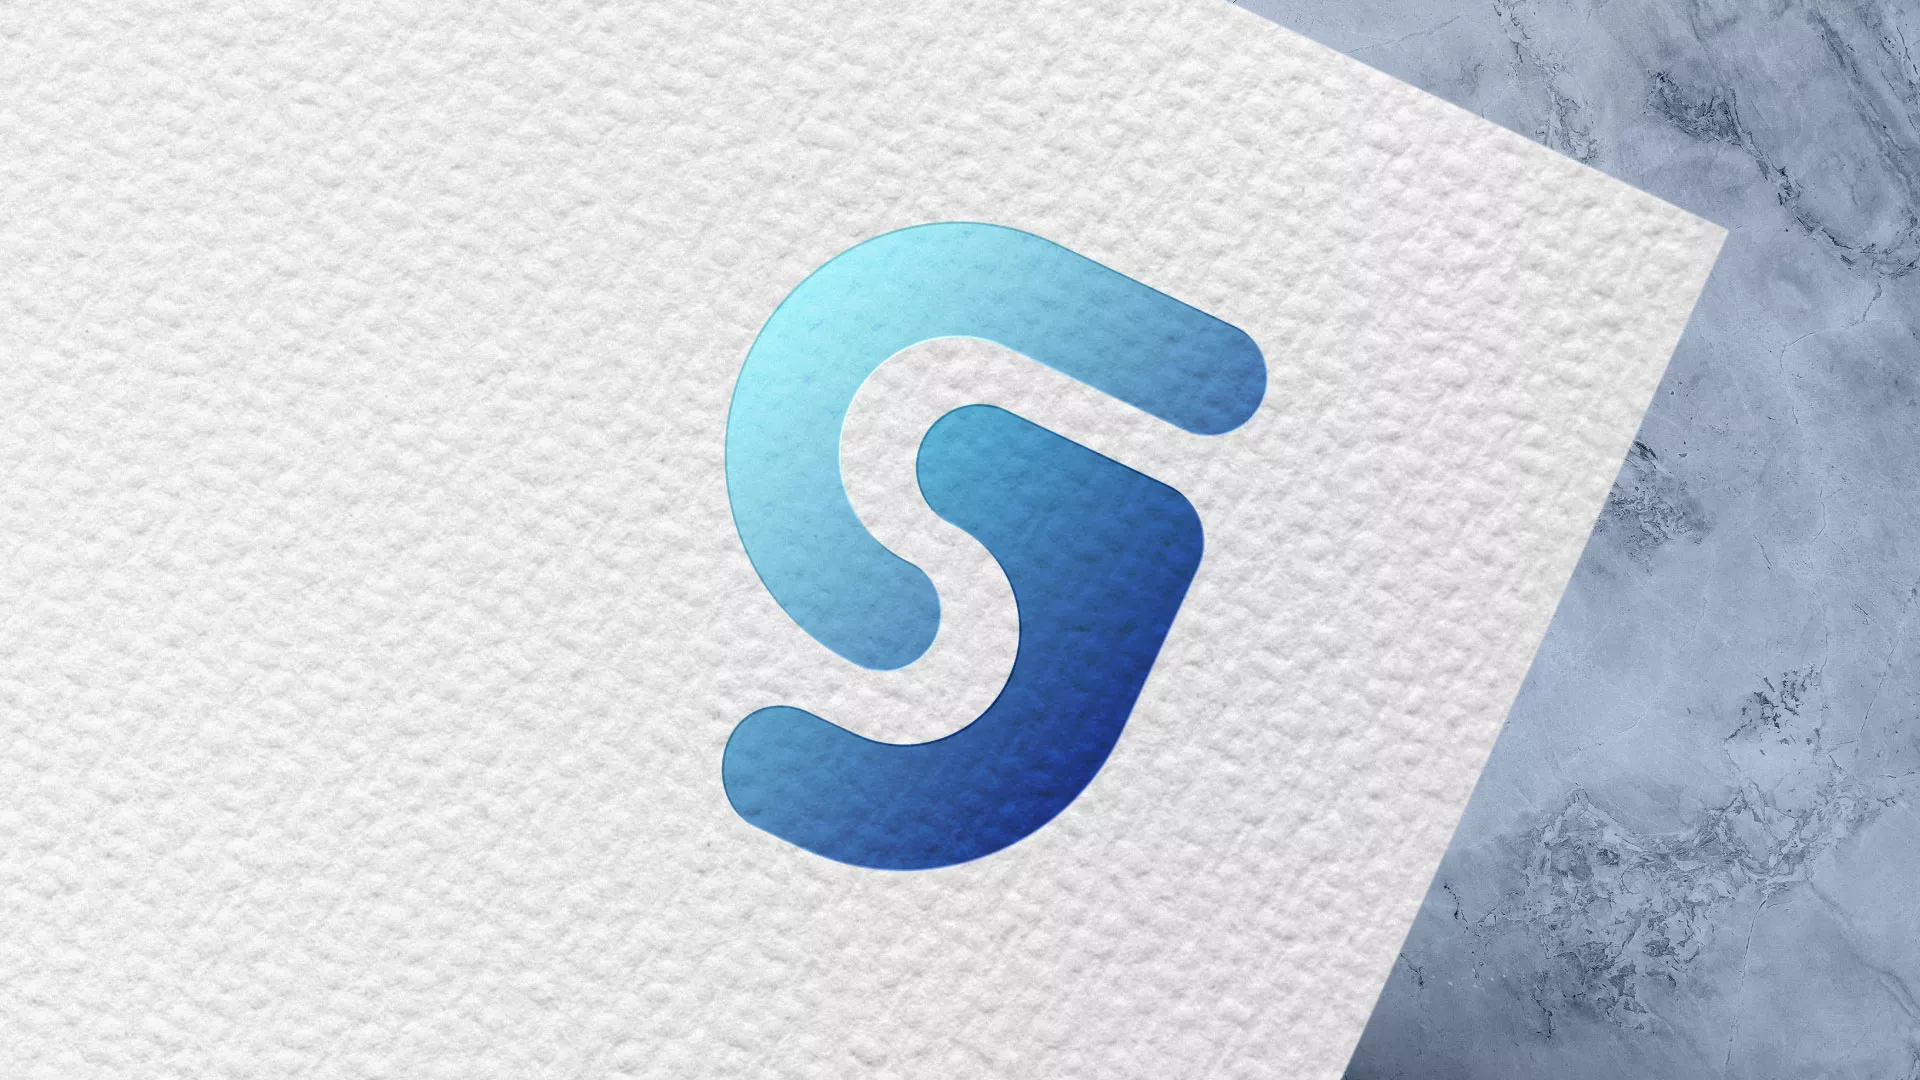 Разработка логотипа газовой компании «Сервис газ» в Щиграх